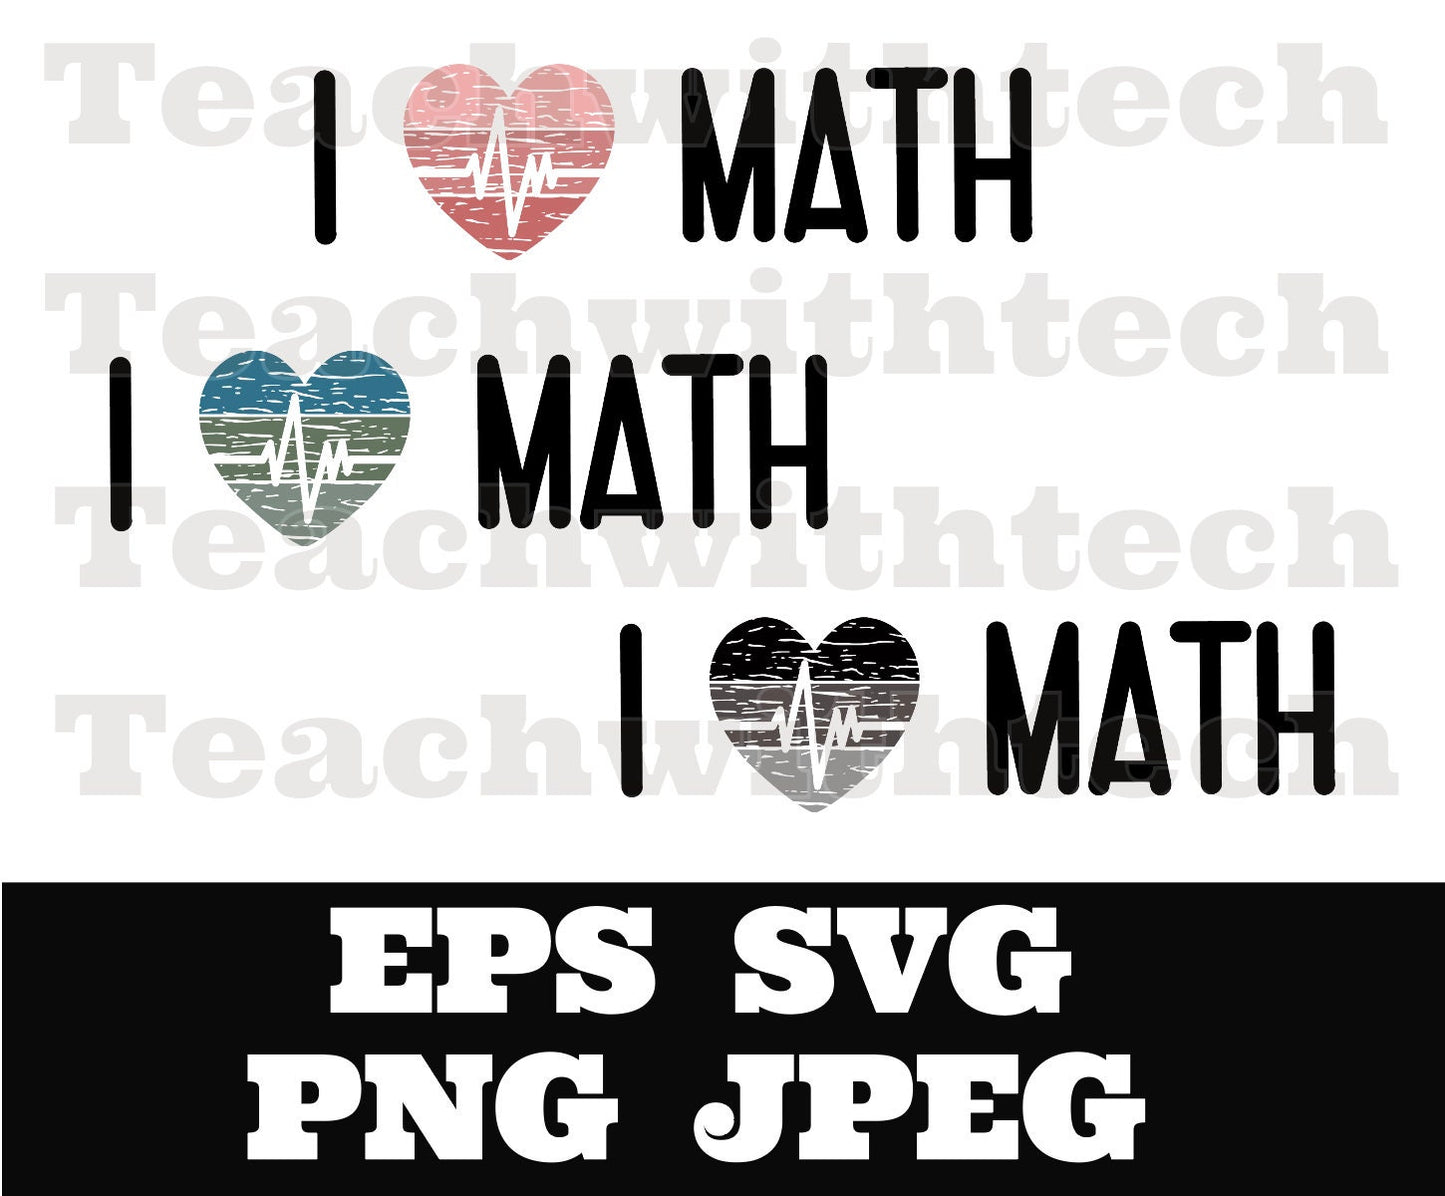 I heart math heartbeat SVG EPS png jpeg, I love math design, math teacher design, distressed heart math download Math lover design download